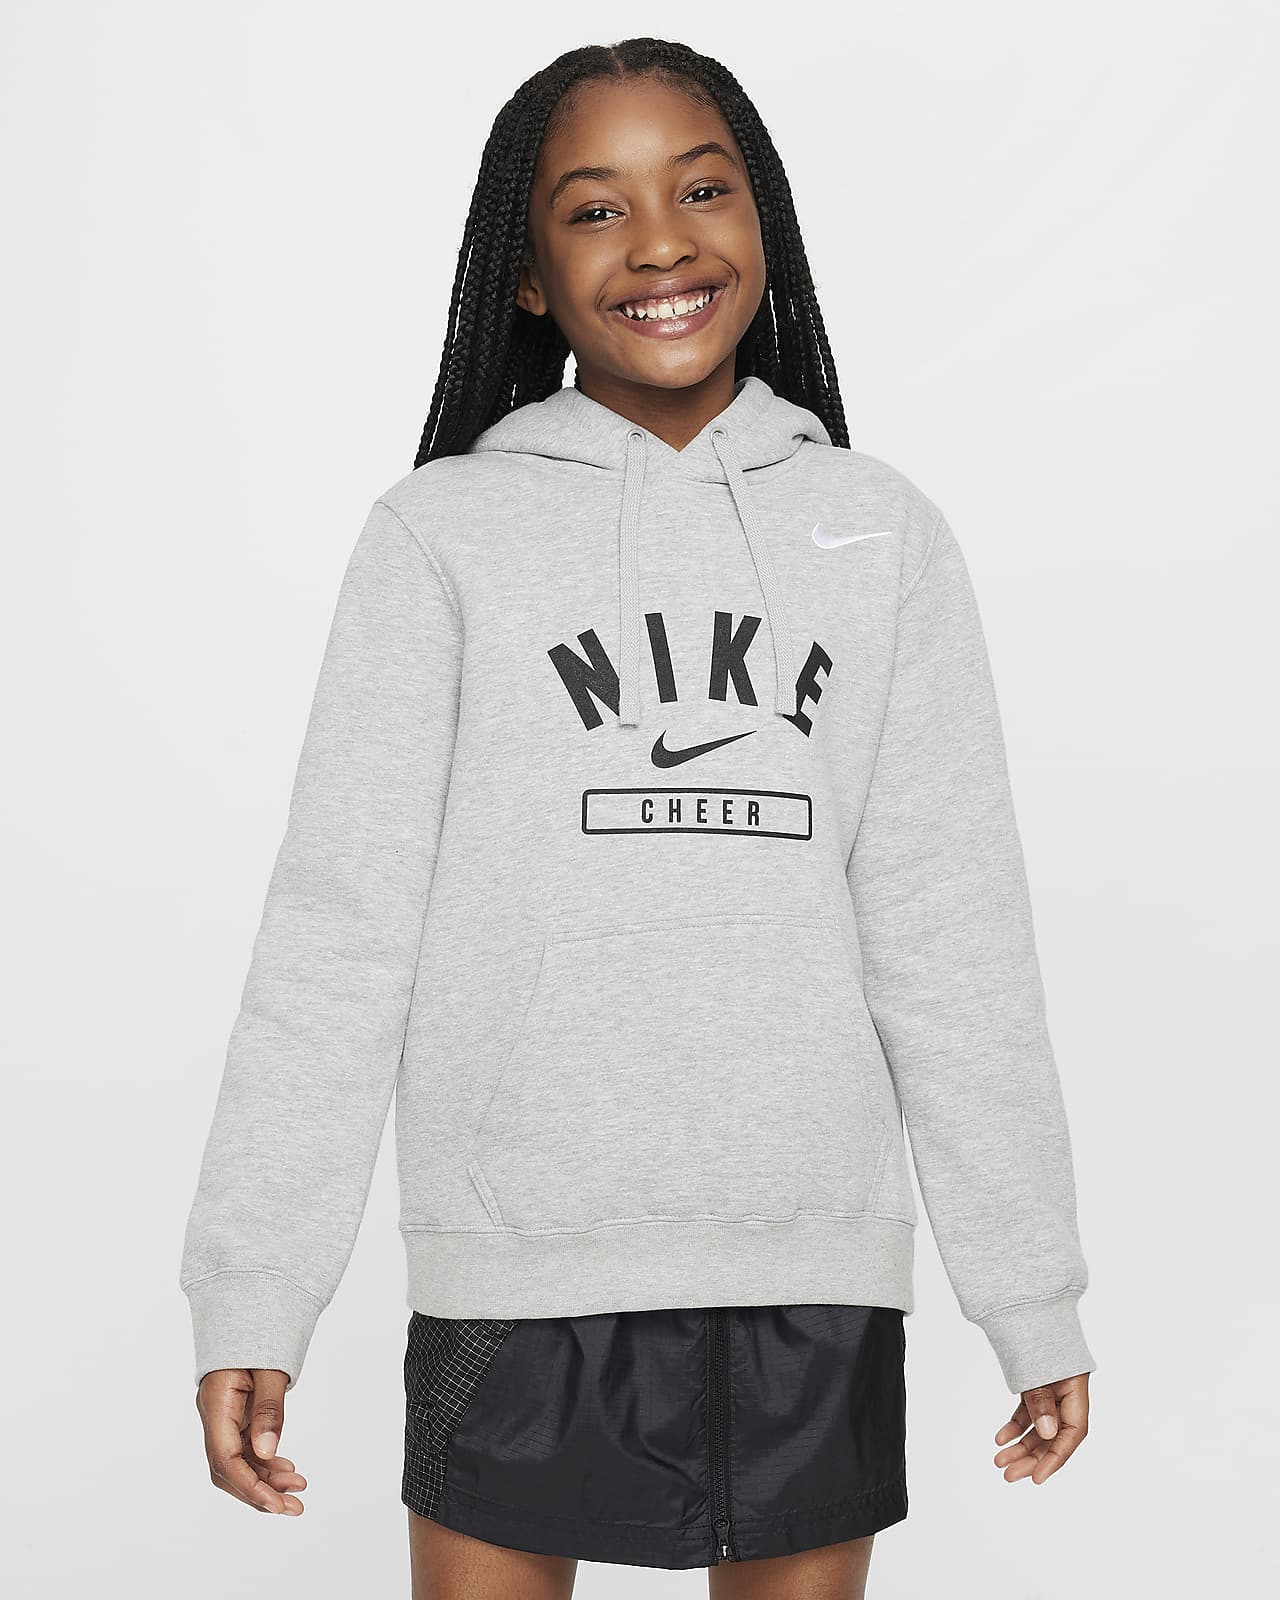 Nike Big Kids' (Girls') Cheer Pullover Hoodie